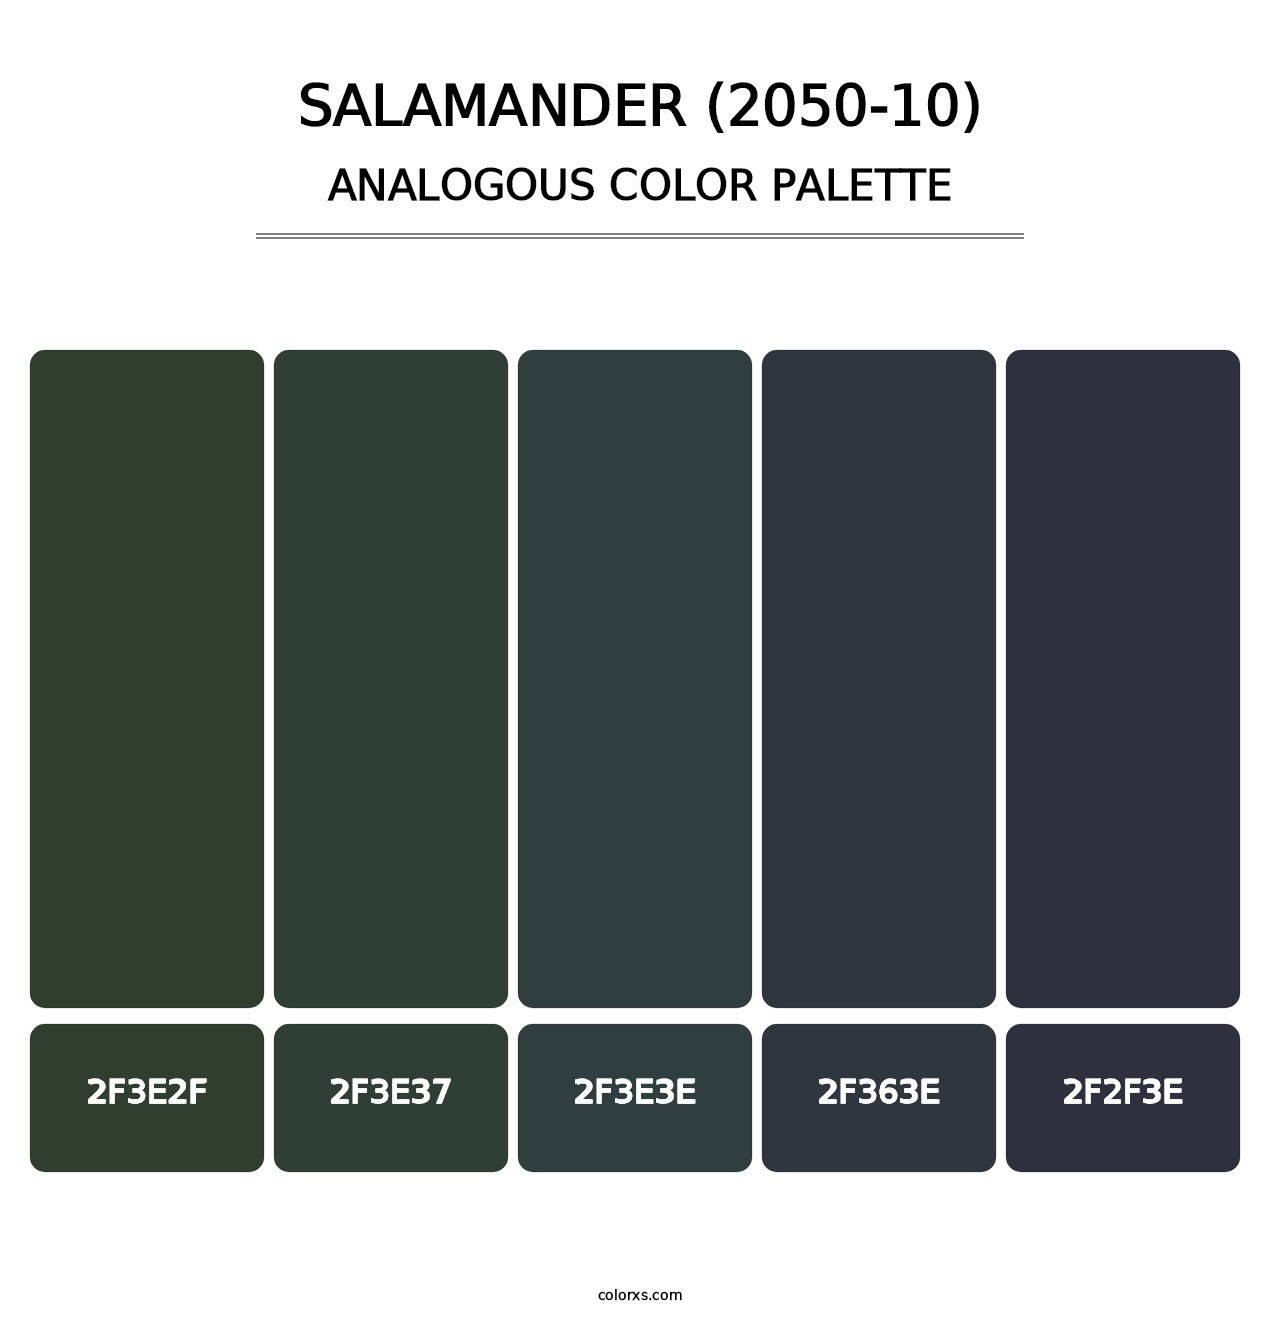 Salamander (2050-10) - Analogous Color Palette